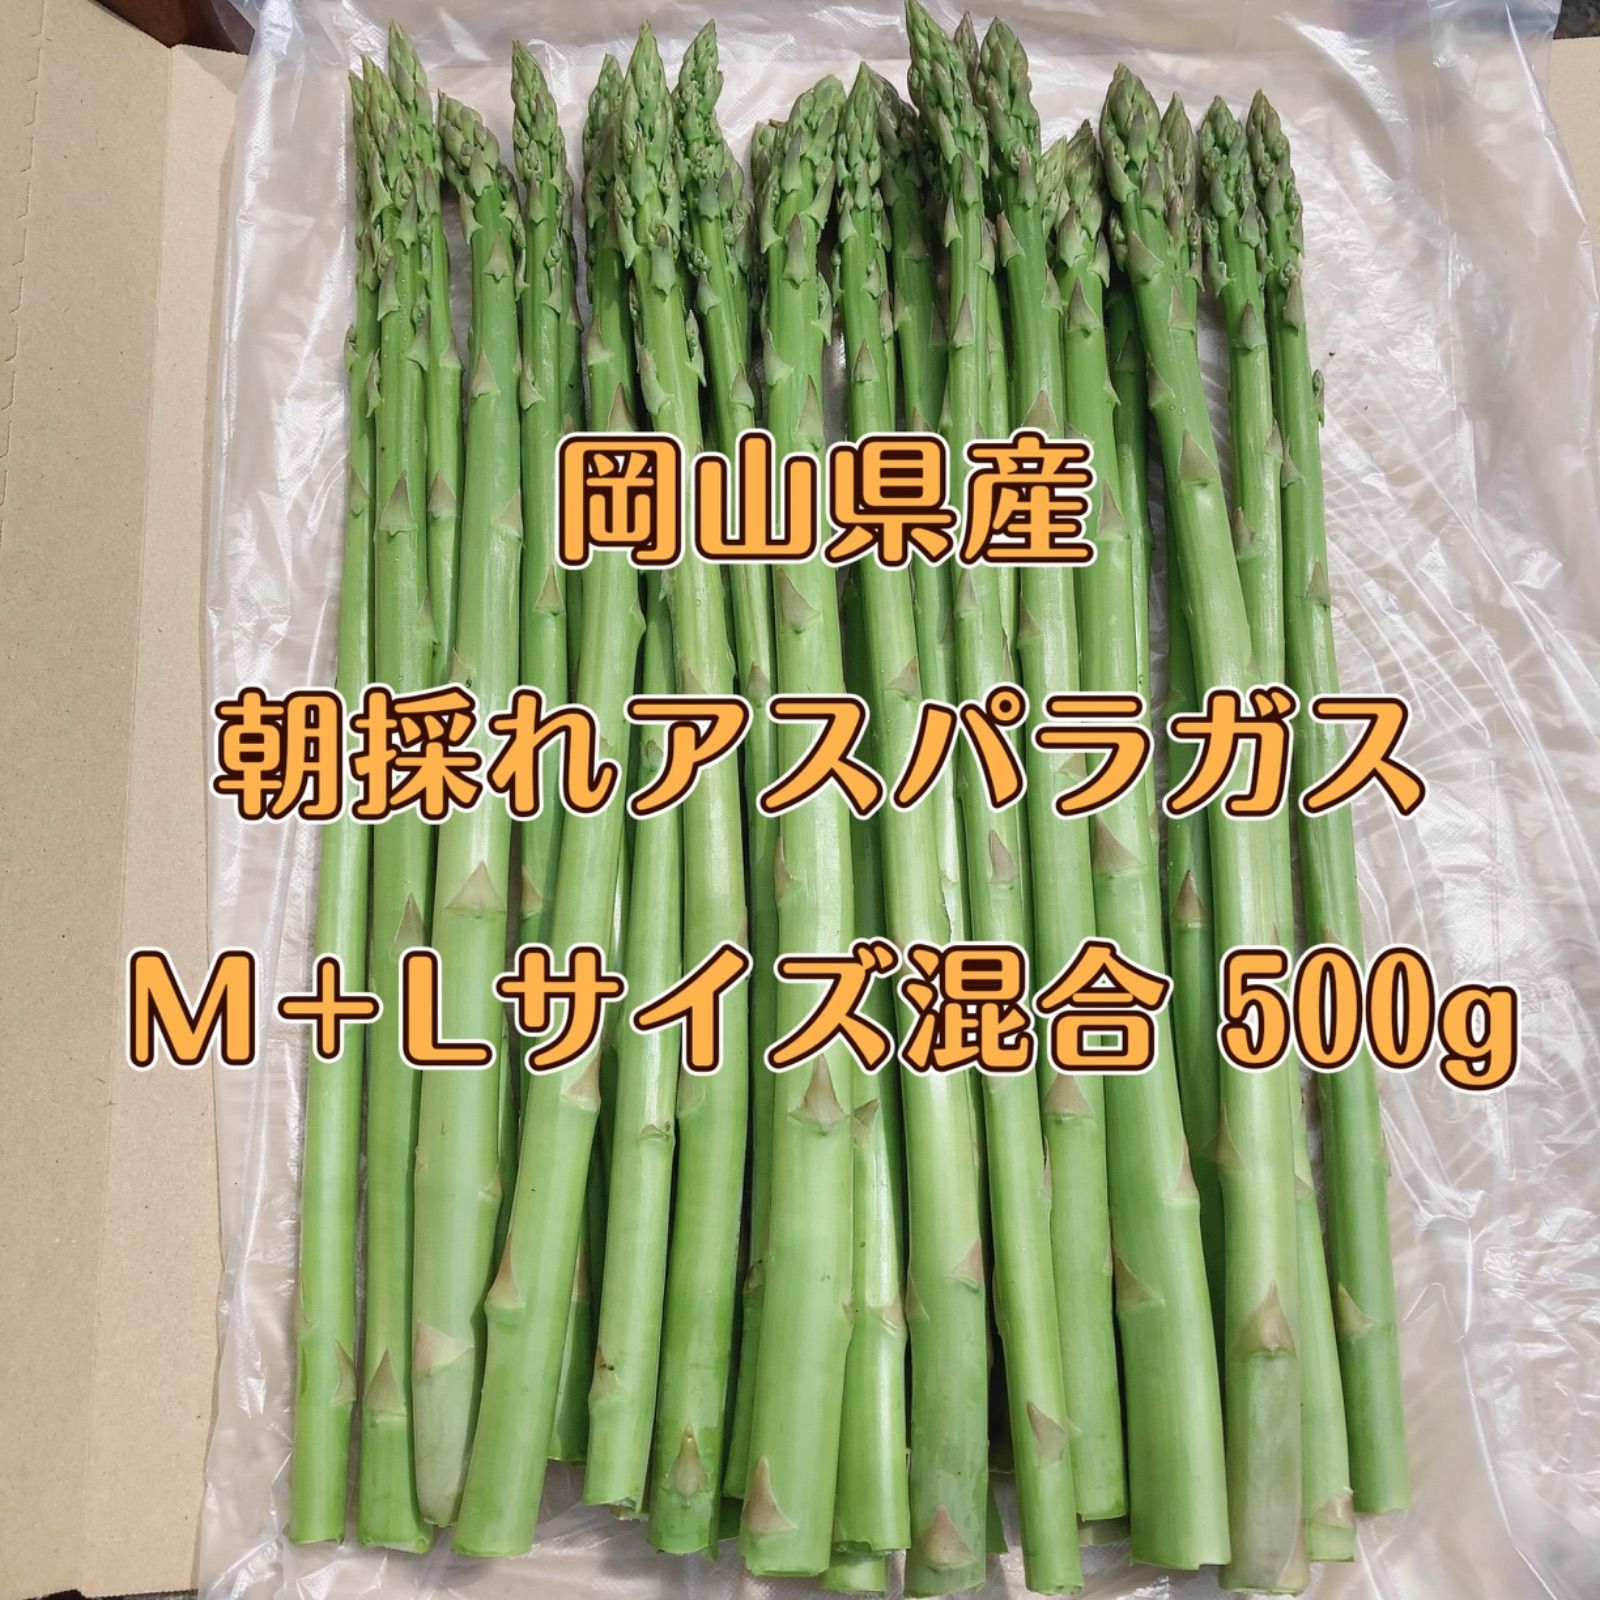 M、L混合 グリーンアスパラガス 500g - 野菜